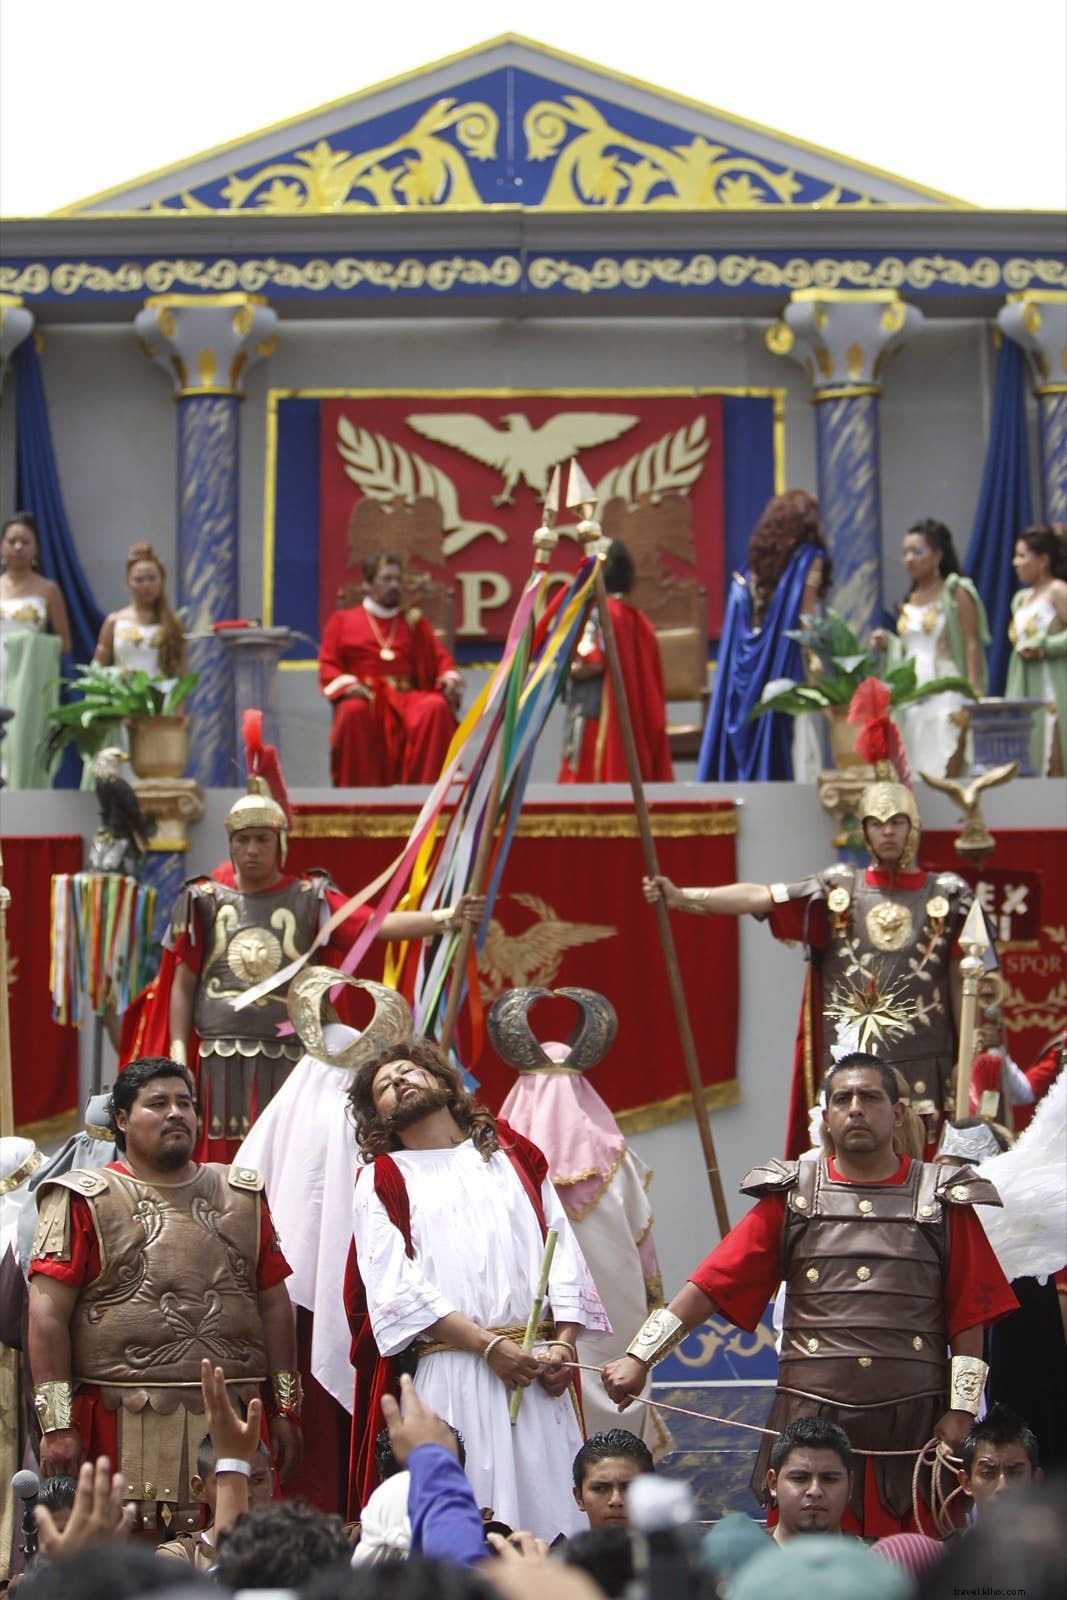 Célébrations de la Semana Santa en Amérique latine et dans les Caraïbes 